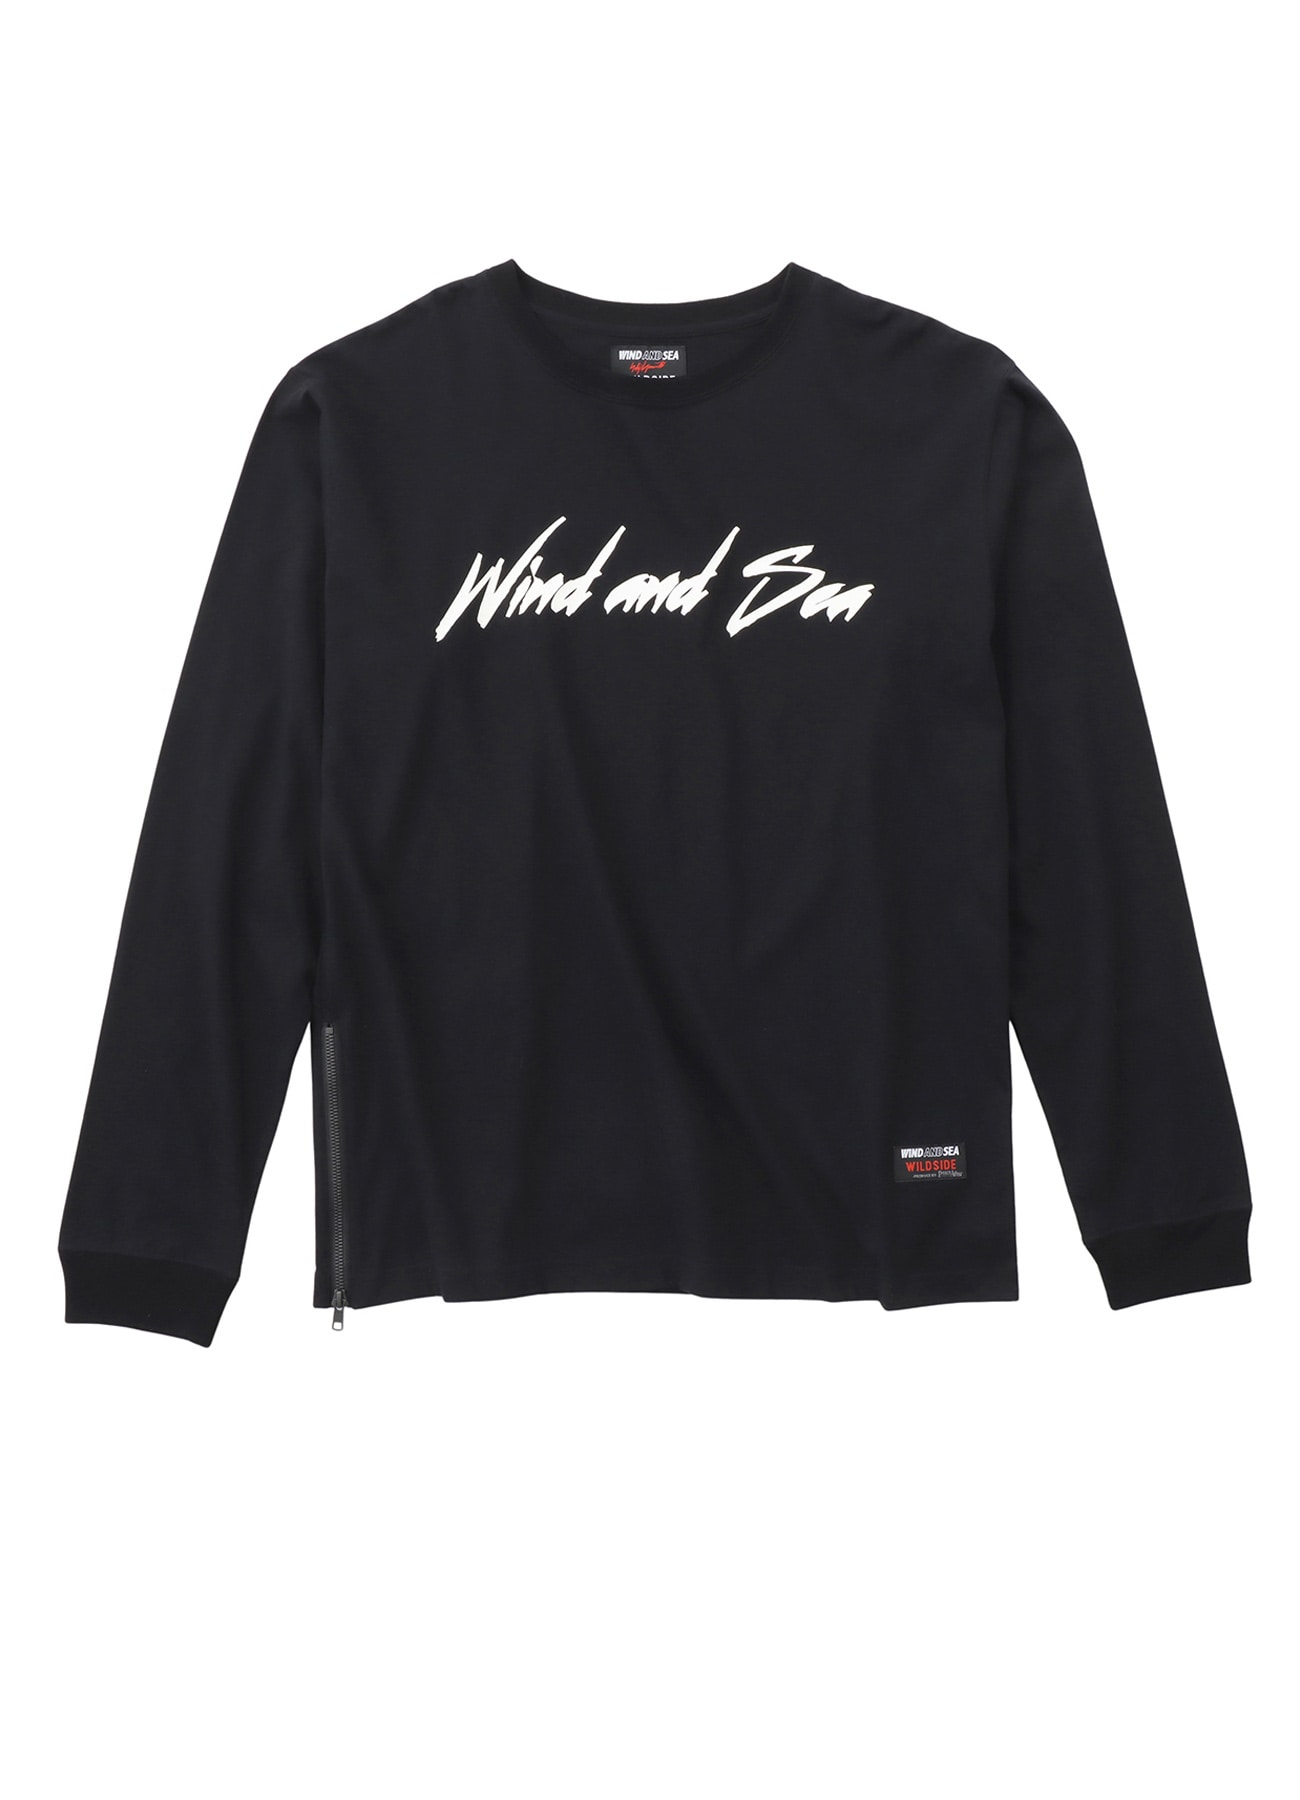 メンズWIND AND SEA S/S T-shirt / Black-D.Gray